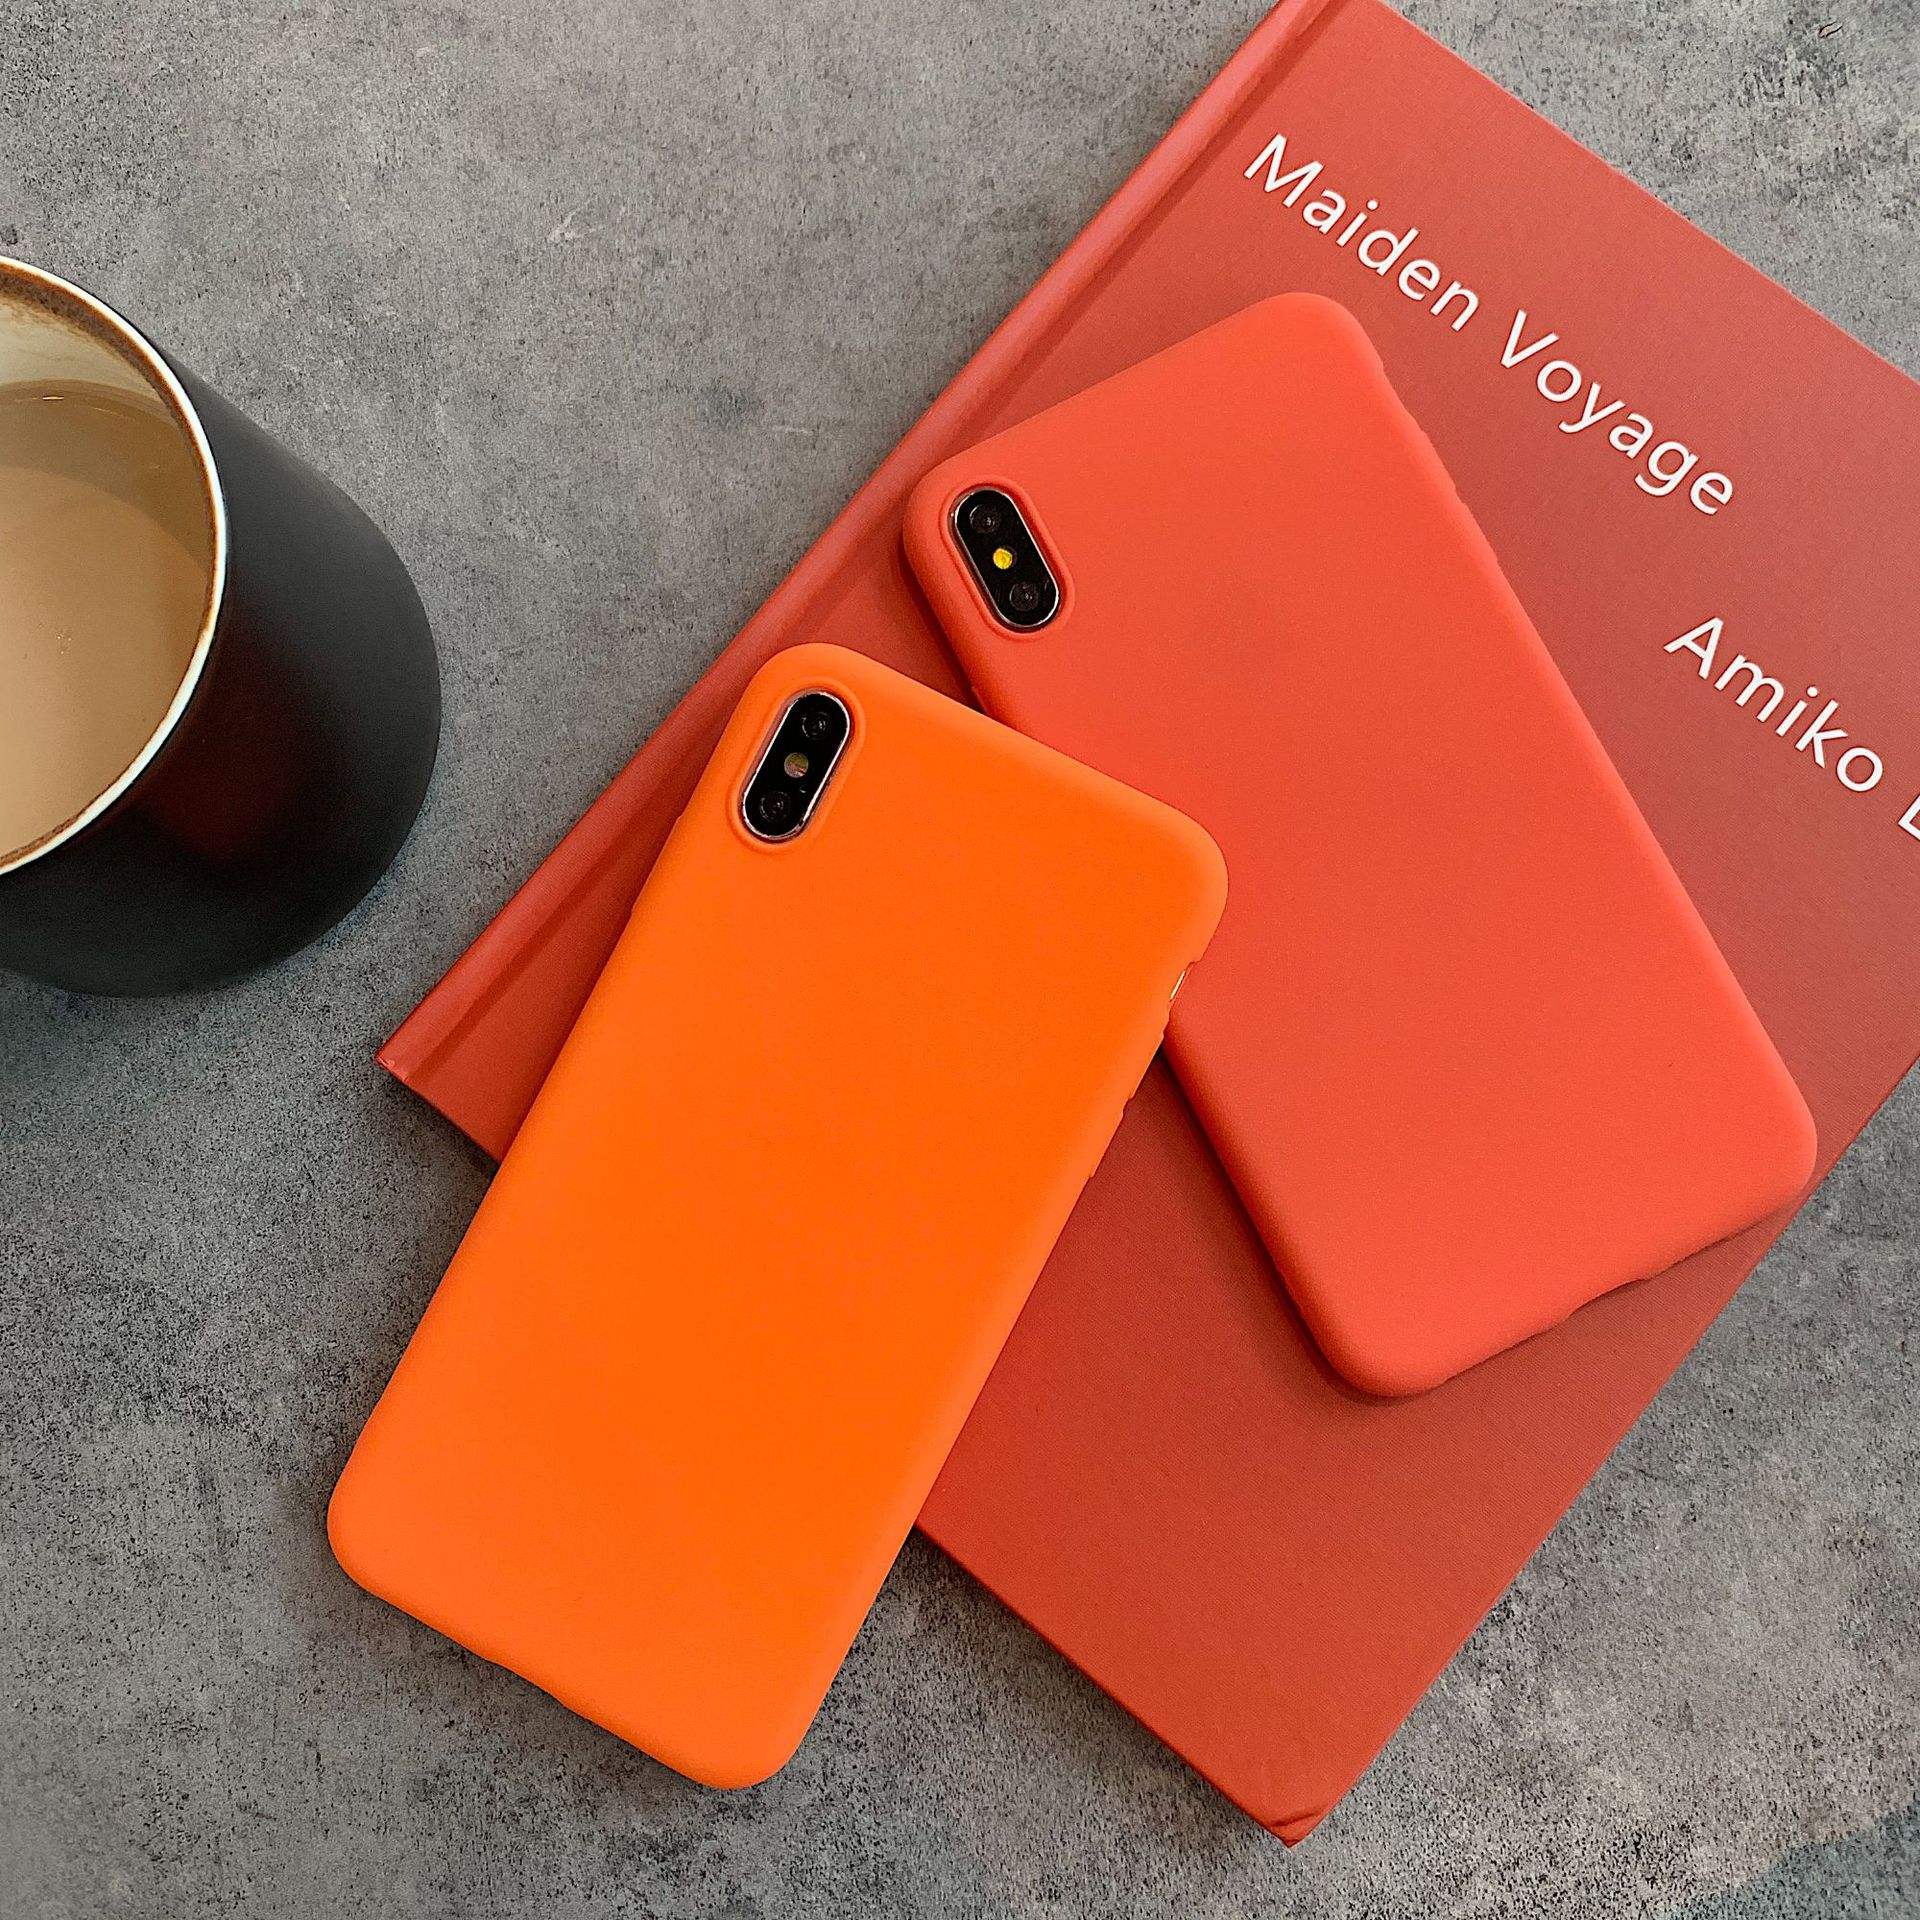 苹果手机橙色限量版苹果11手机电池显示